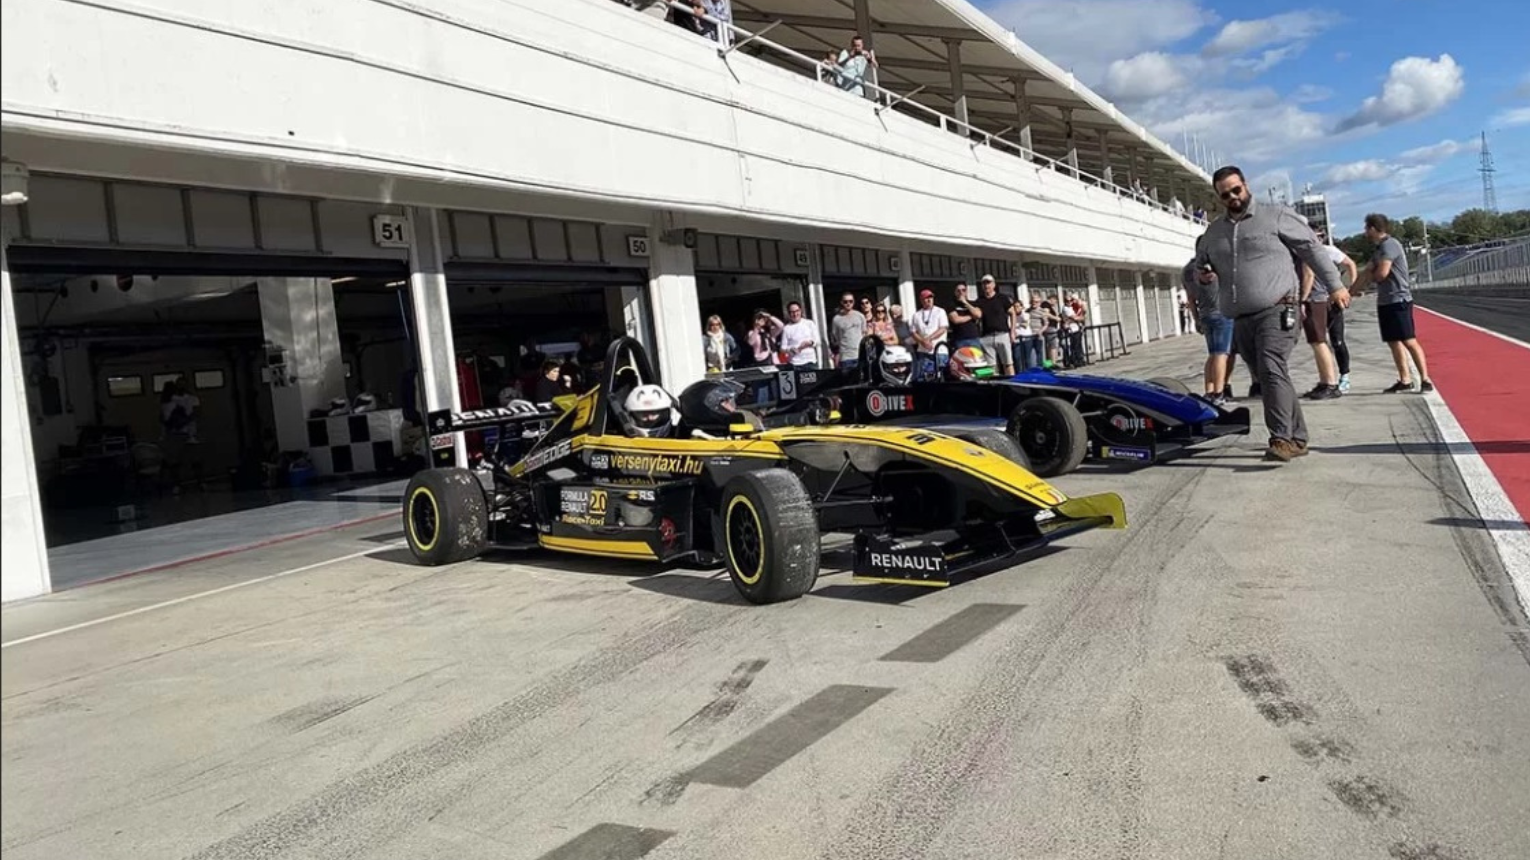 Kétüléses Forma Renault versenyautóval élményautózás az M-Ringen